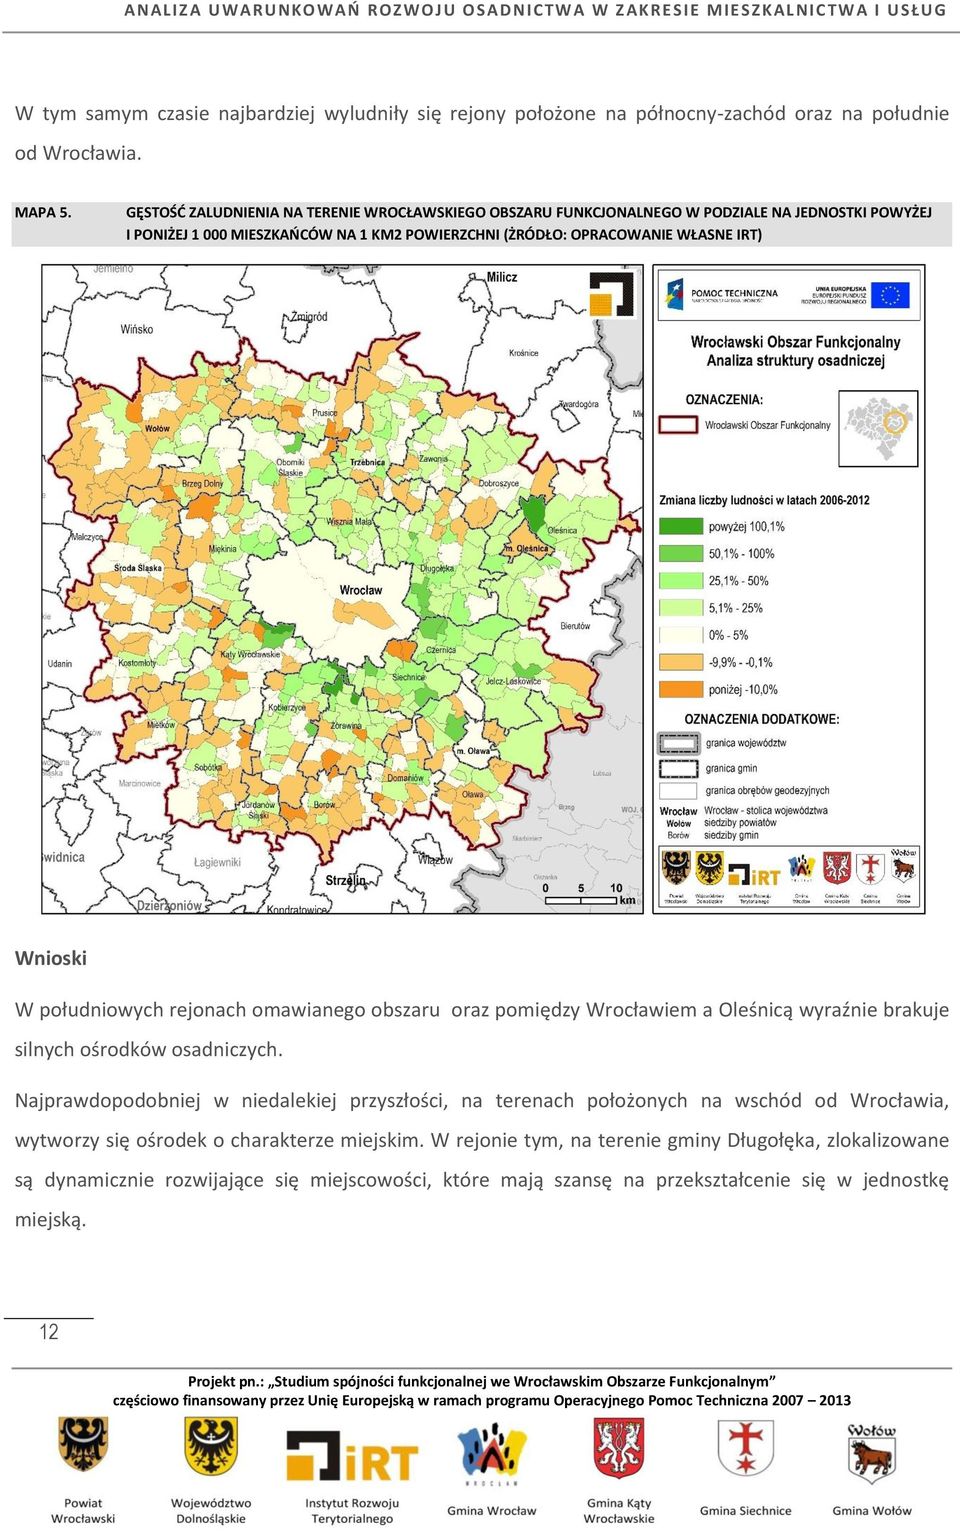 Wnioski W południowych rejonach omawianego obszaru oraz pomiędzy Wrocławiem a Oleśnicą wyraźnie brakuje silnych ośrodków osadniczych.